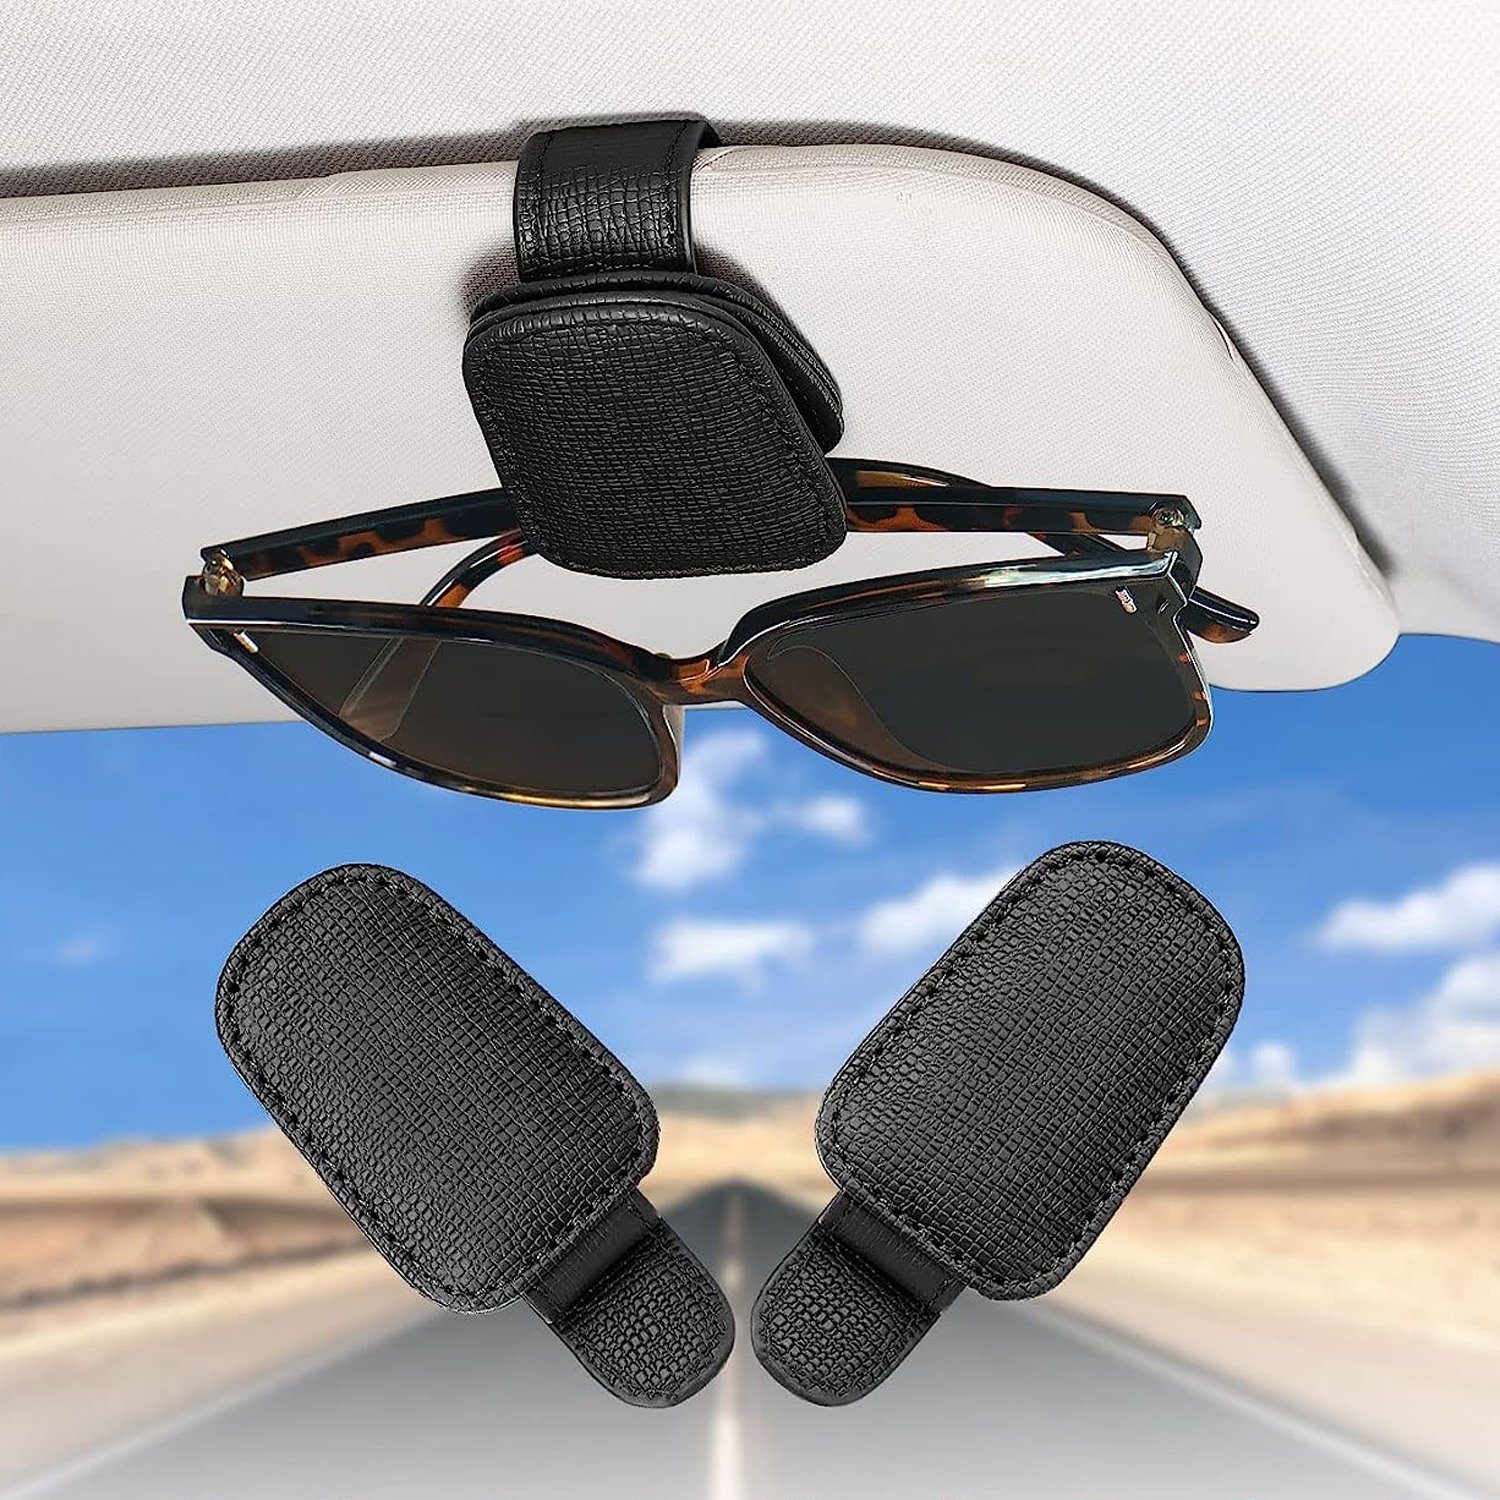 NUODWELL Autosonnenschutz 2 Pack Brillenhalter Auto Sonnenblende, Schwarz Visier Sonnenbrillenhalterung